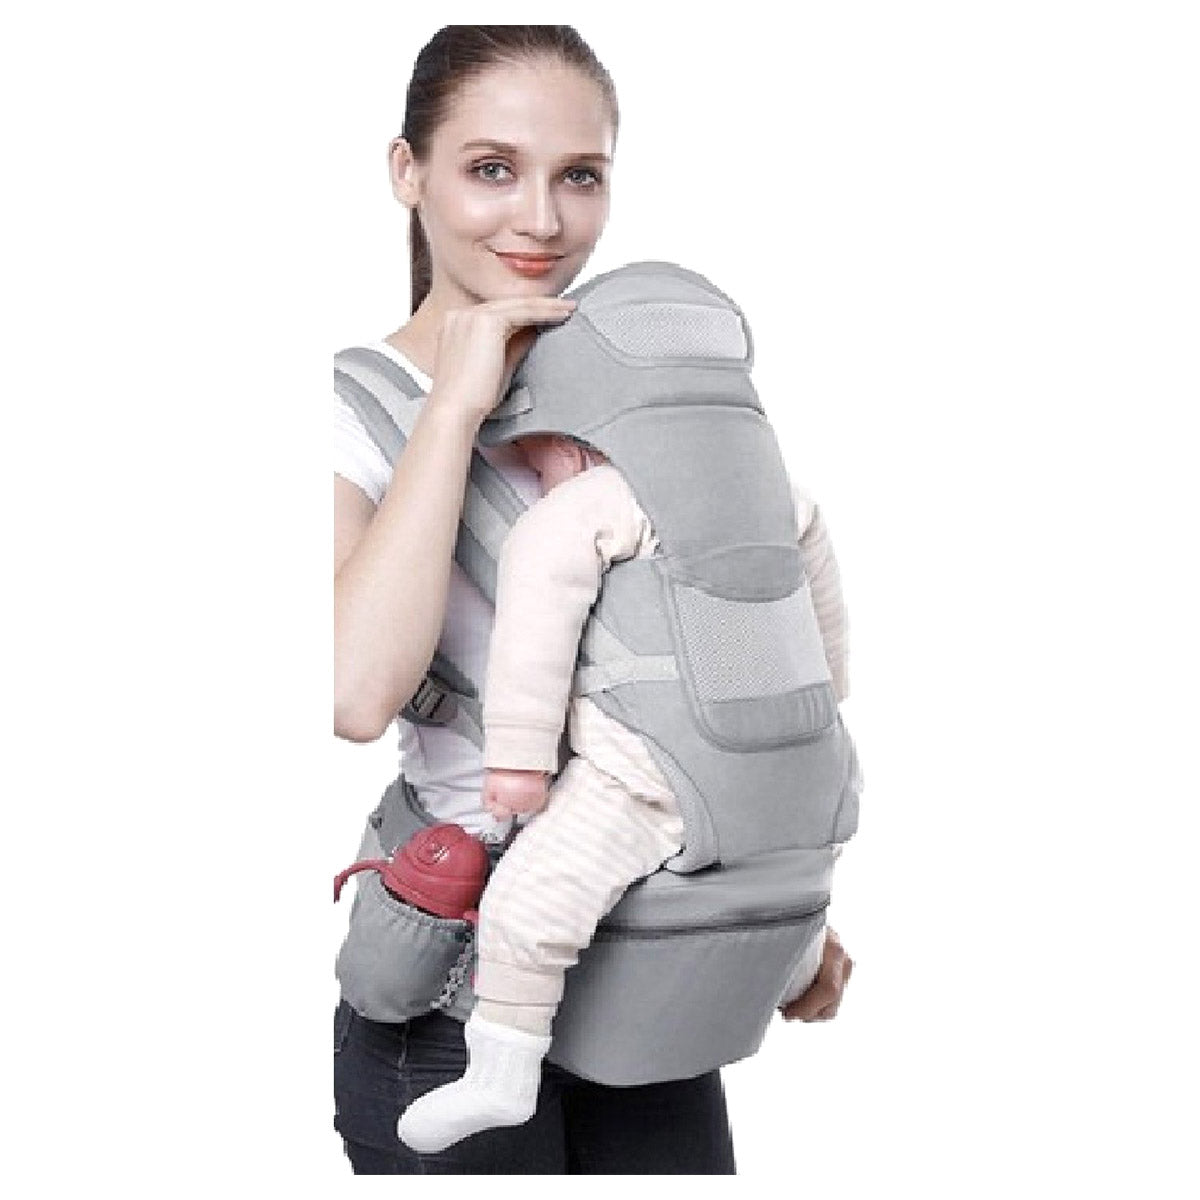 Ariko Porte-bébé ergonomique 15 en 1 - Porte-bébé jusqu'à 25 kg - Porte-bébé - Porte-bébé - Multifonctionnel - Gris